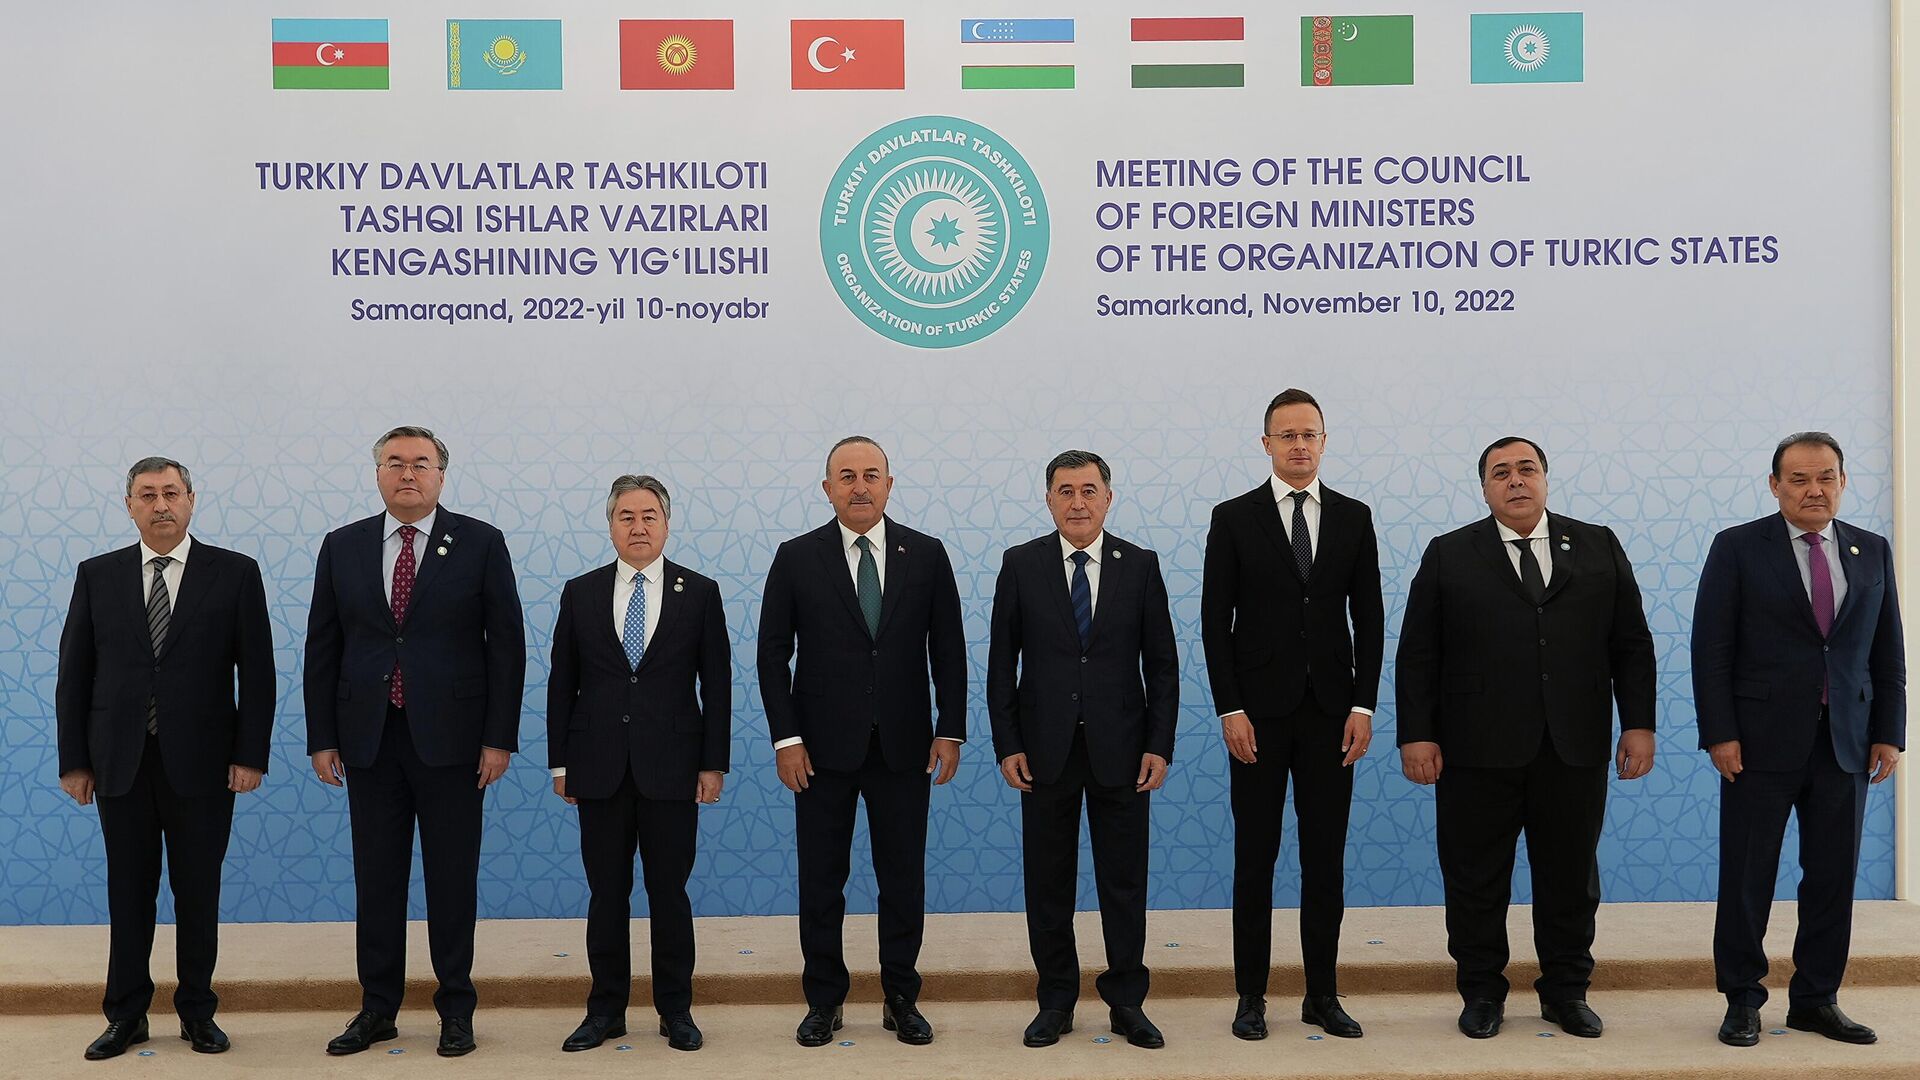 В Самарканде проходит  заседание Совета министров тюркских государств  Организации тюркских государств (ОТГ) - Sputnik Узбекистан, 1920, 10.11.2022